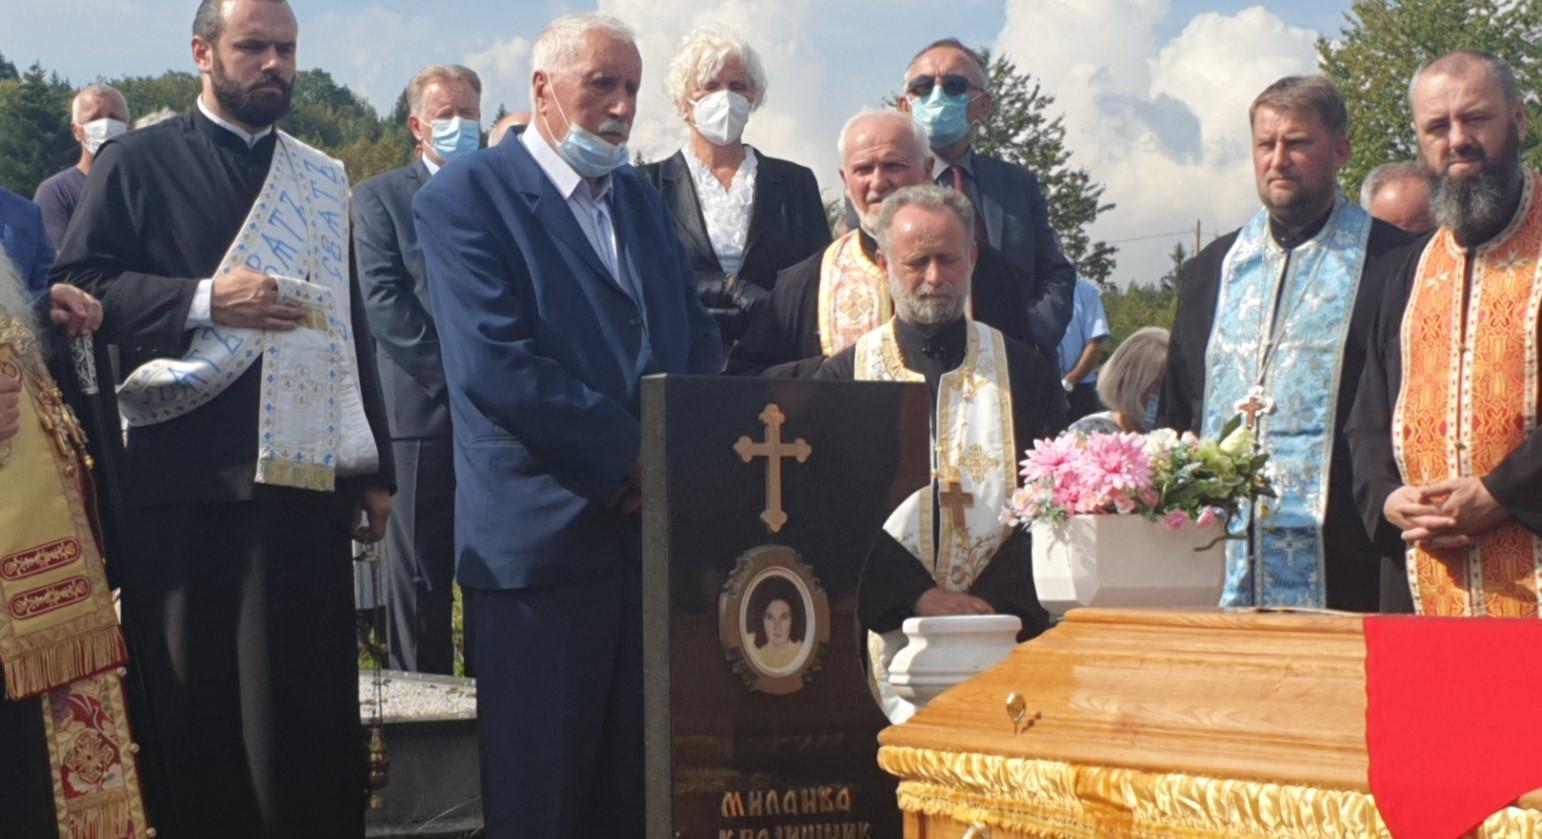 Božo Vučurević održao govor na sahrani zločincu Krajišniku: "S tobom smo stvorili prvu srpsku državu s ove strane Drine"